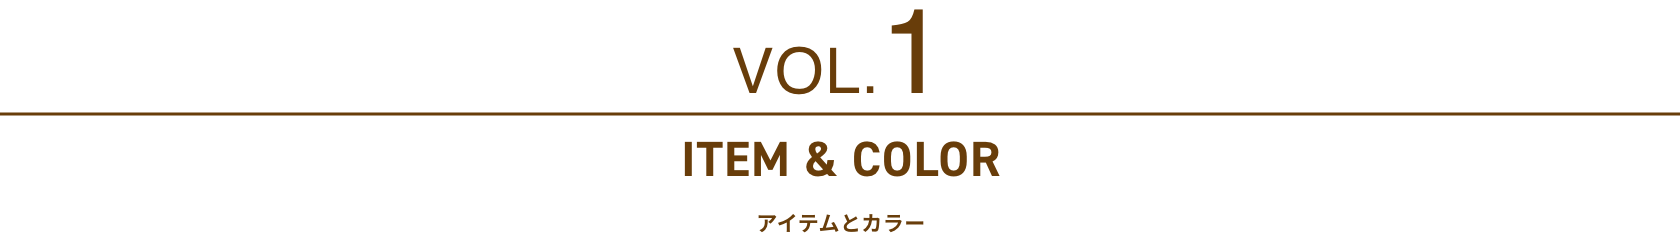 Vol 1. ITEM & COLOR